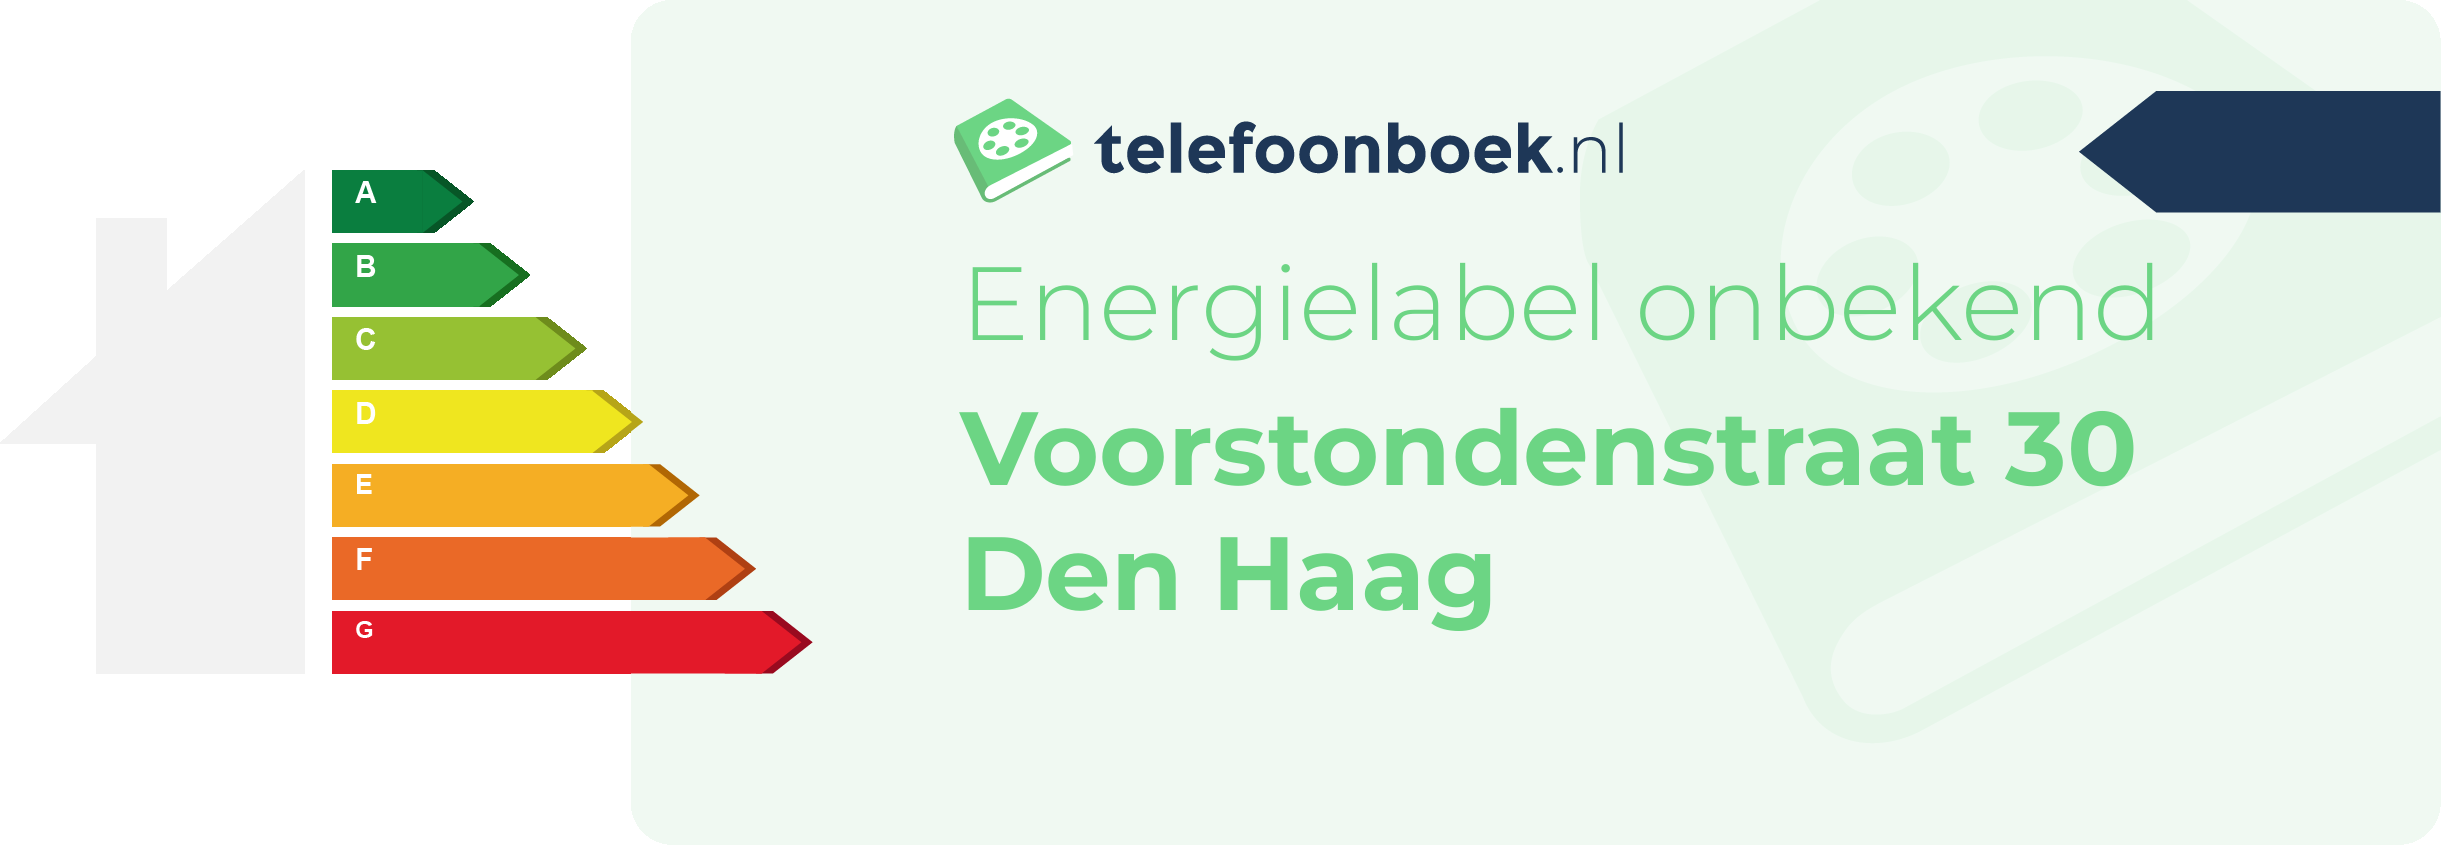 Energielabel Voorstondenstraat 30 Den Haag